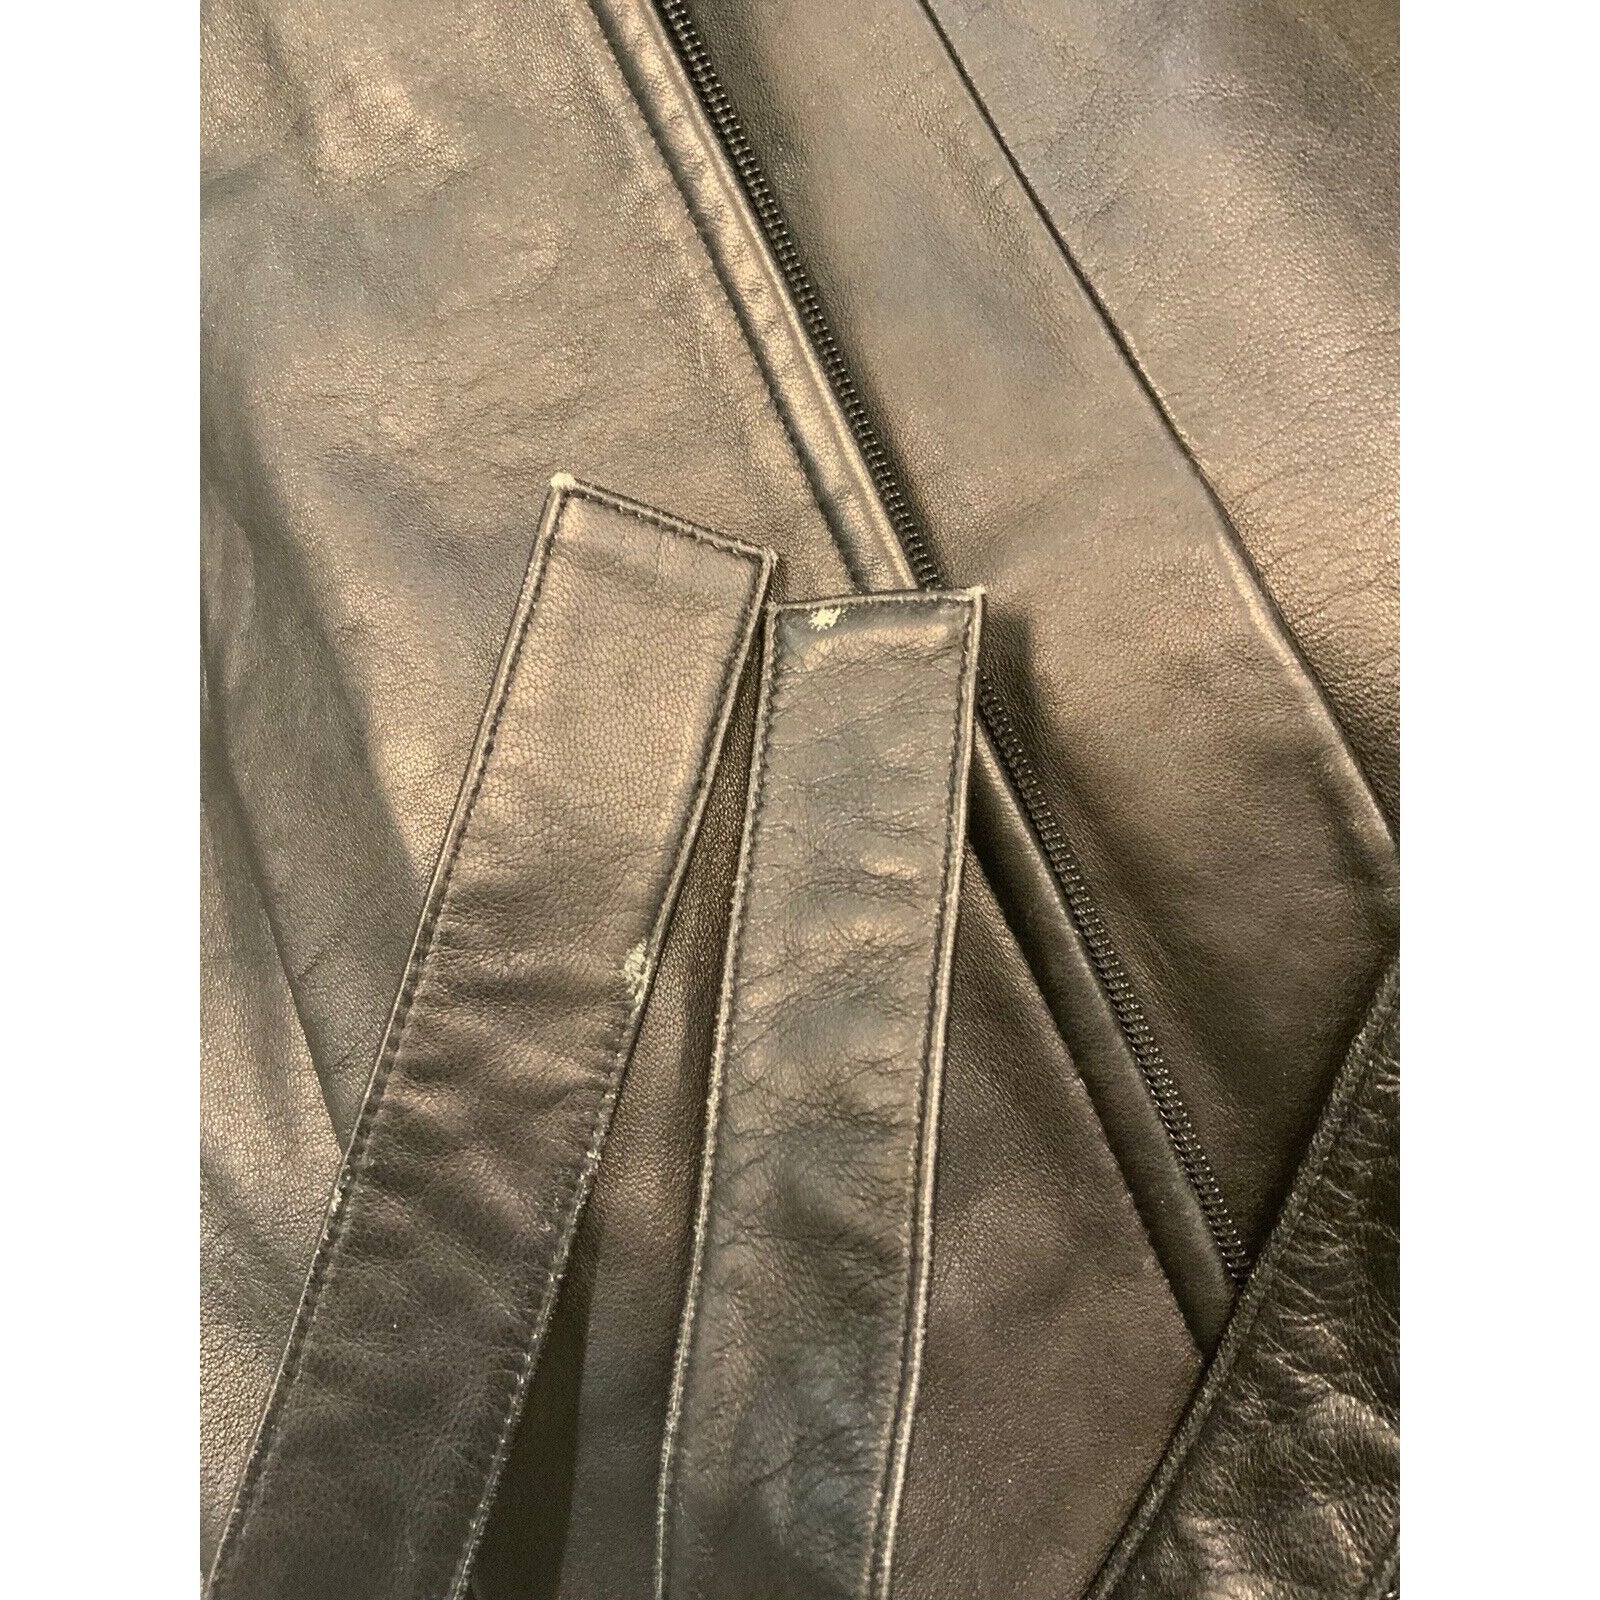 Closeup Of White Marks On Jacket Belt